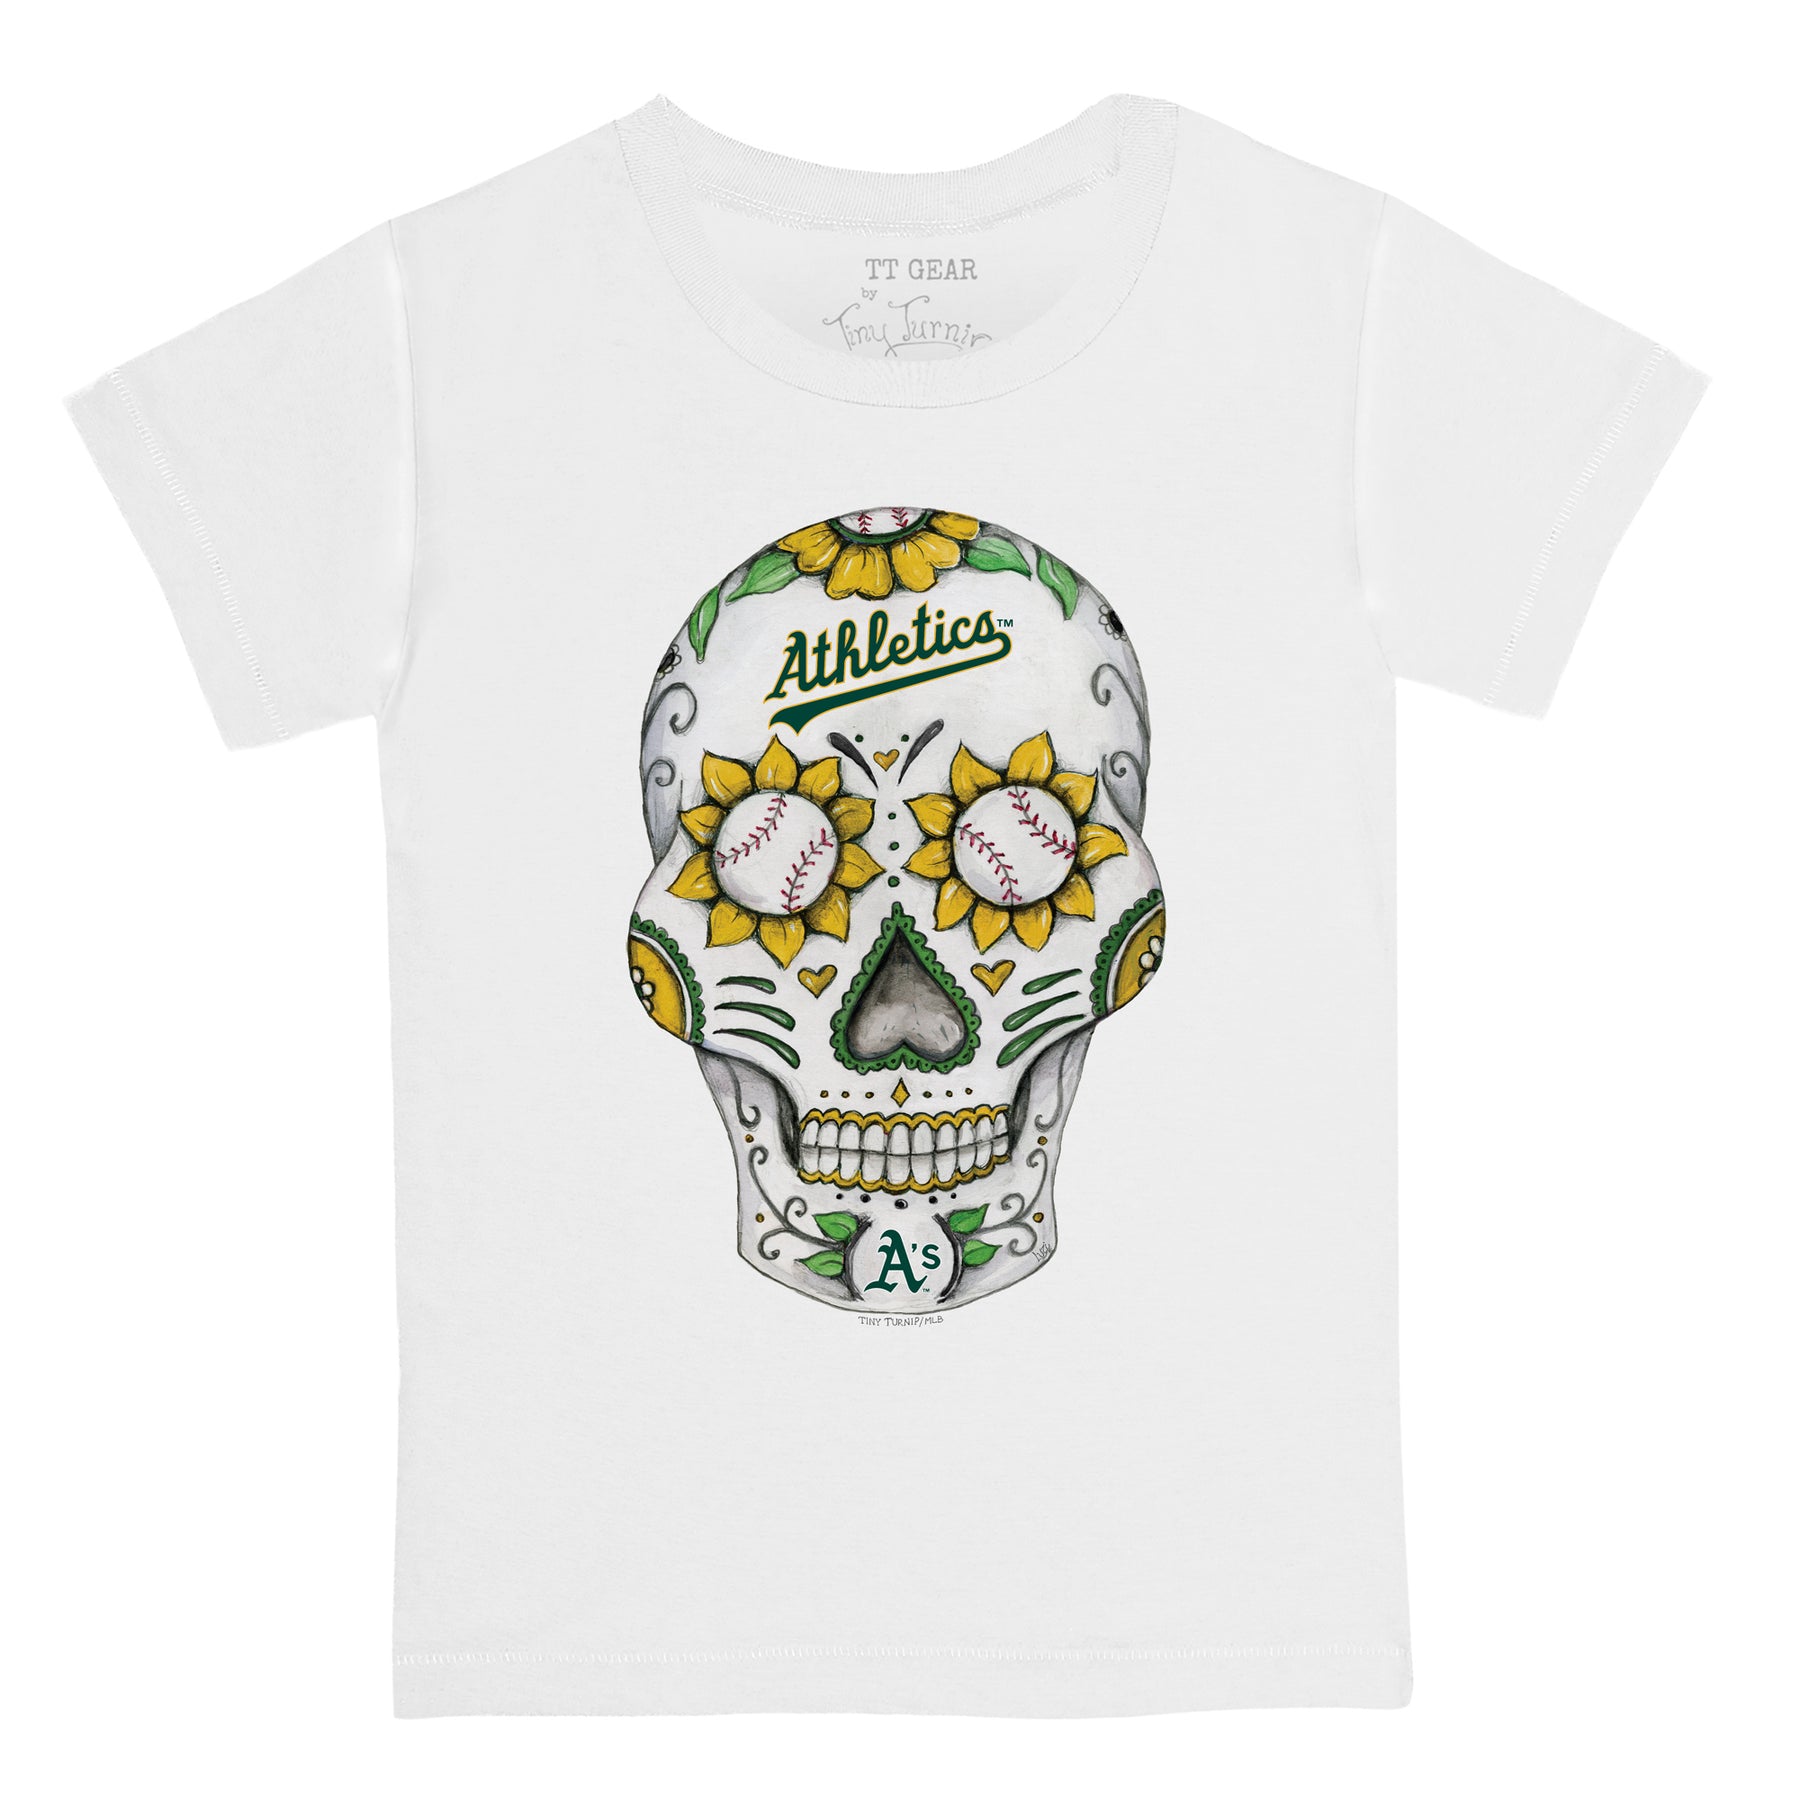 Oakland Athletics Sugar Skull Tee Shirt